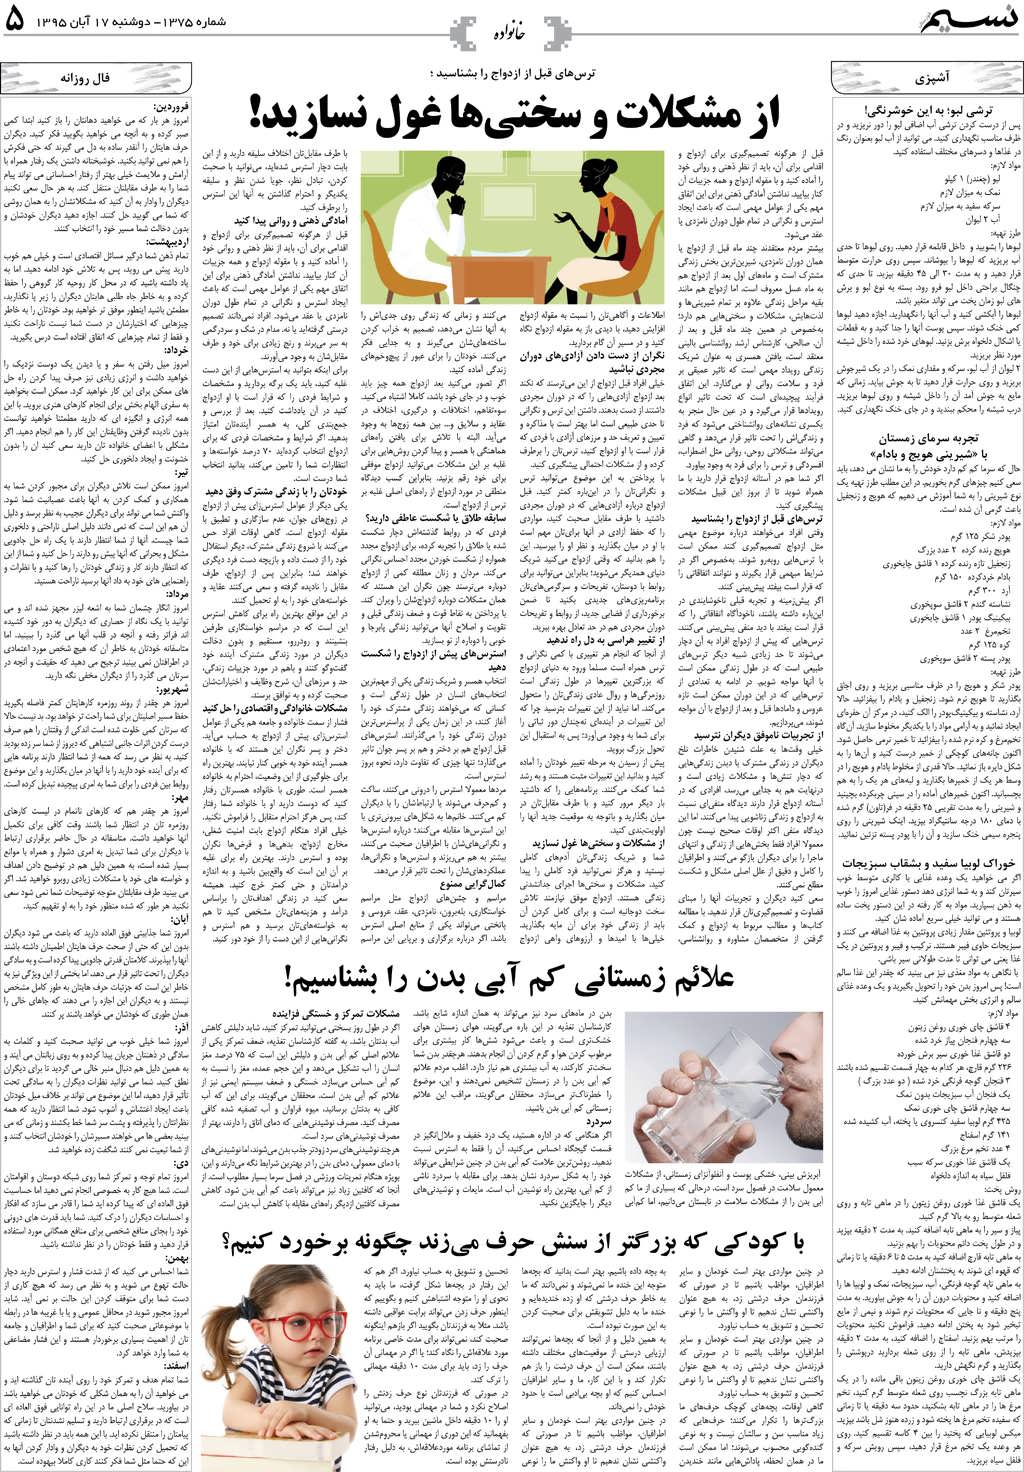 صفحه خانواده روزنامه نسیم شماره 1375